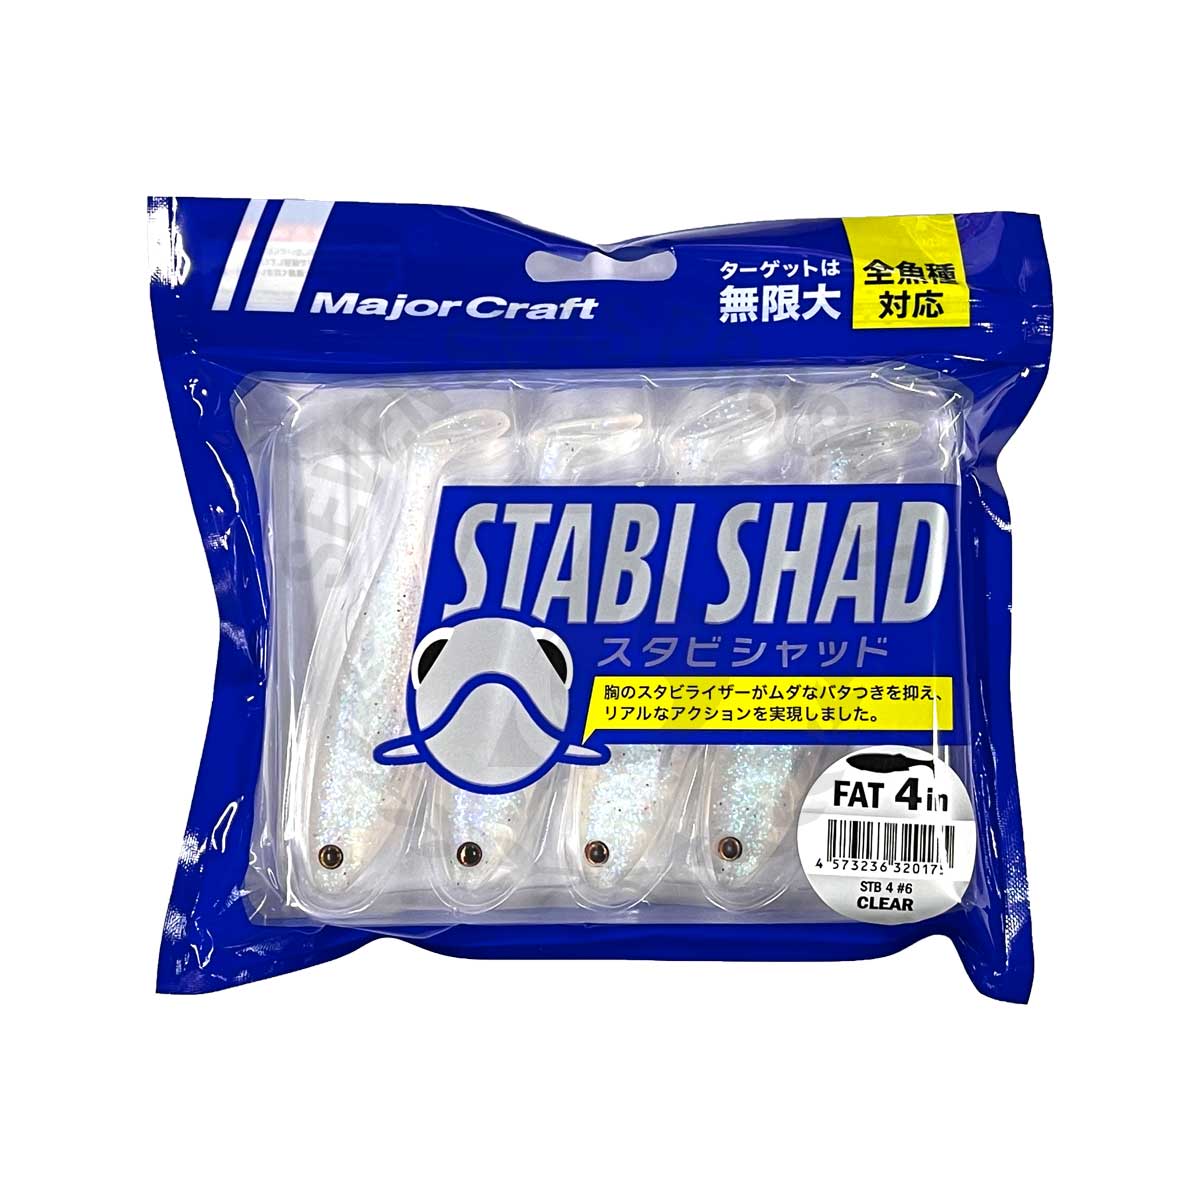 Major Craft Stabi Shad STB-FAT 4 #6-Clear*เหยื่อปลายาง - 7 SEAS